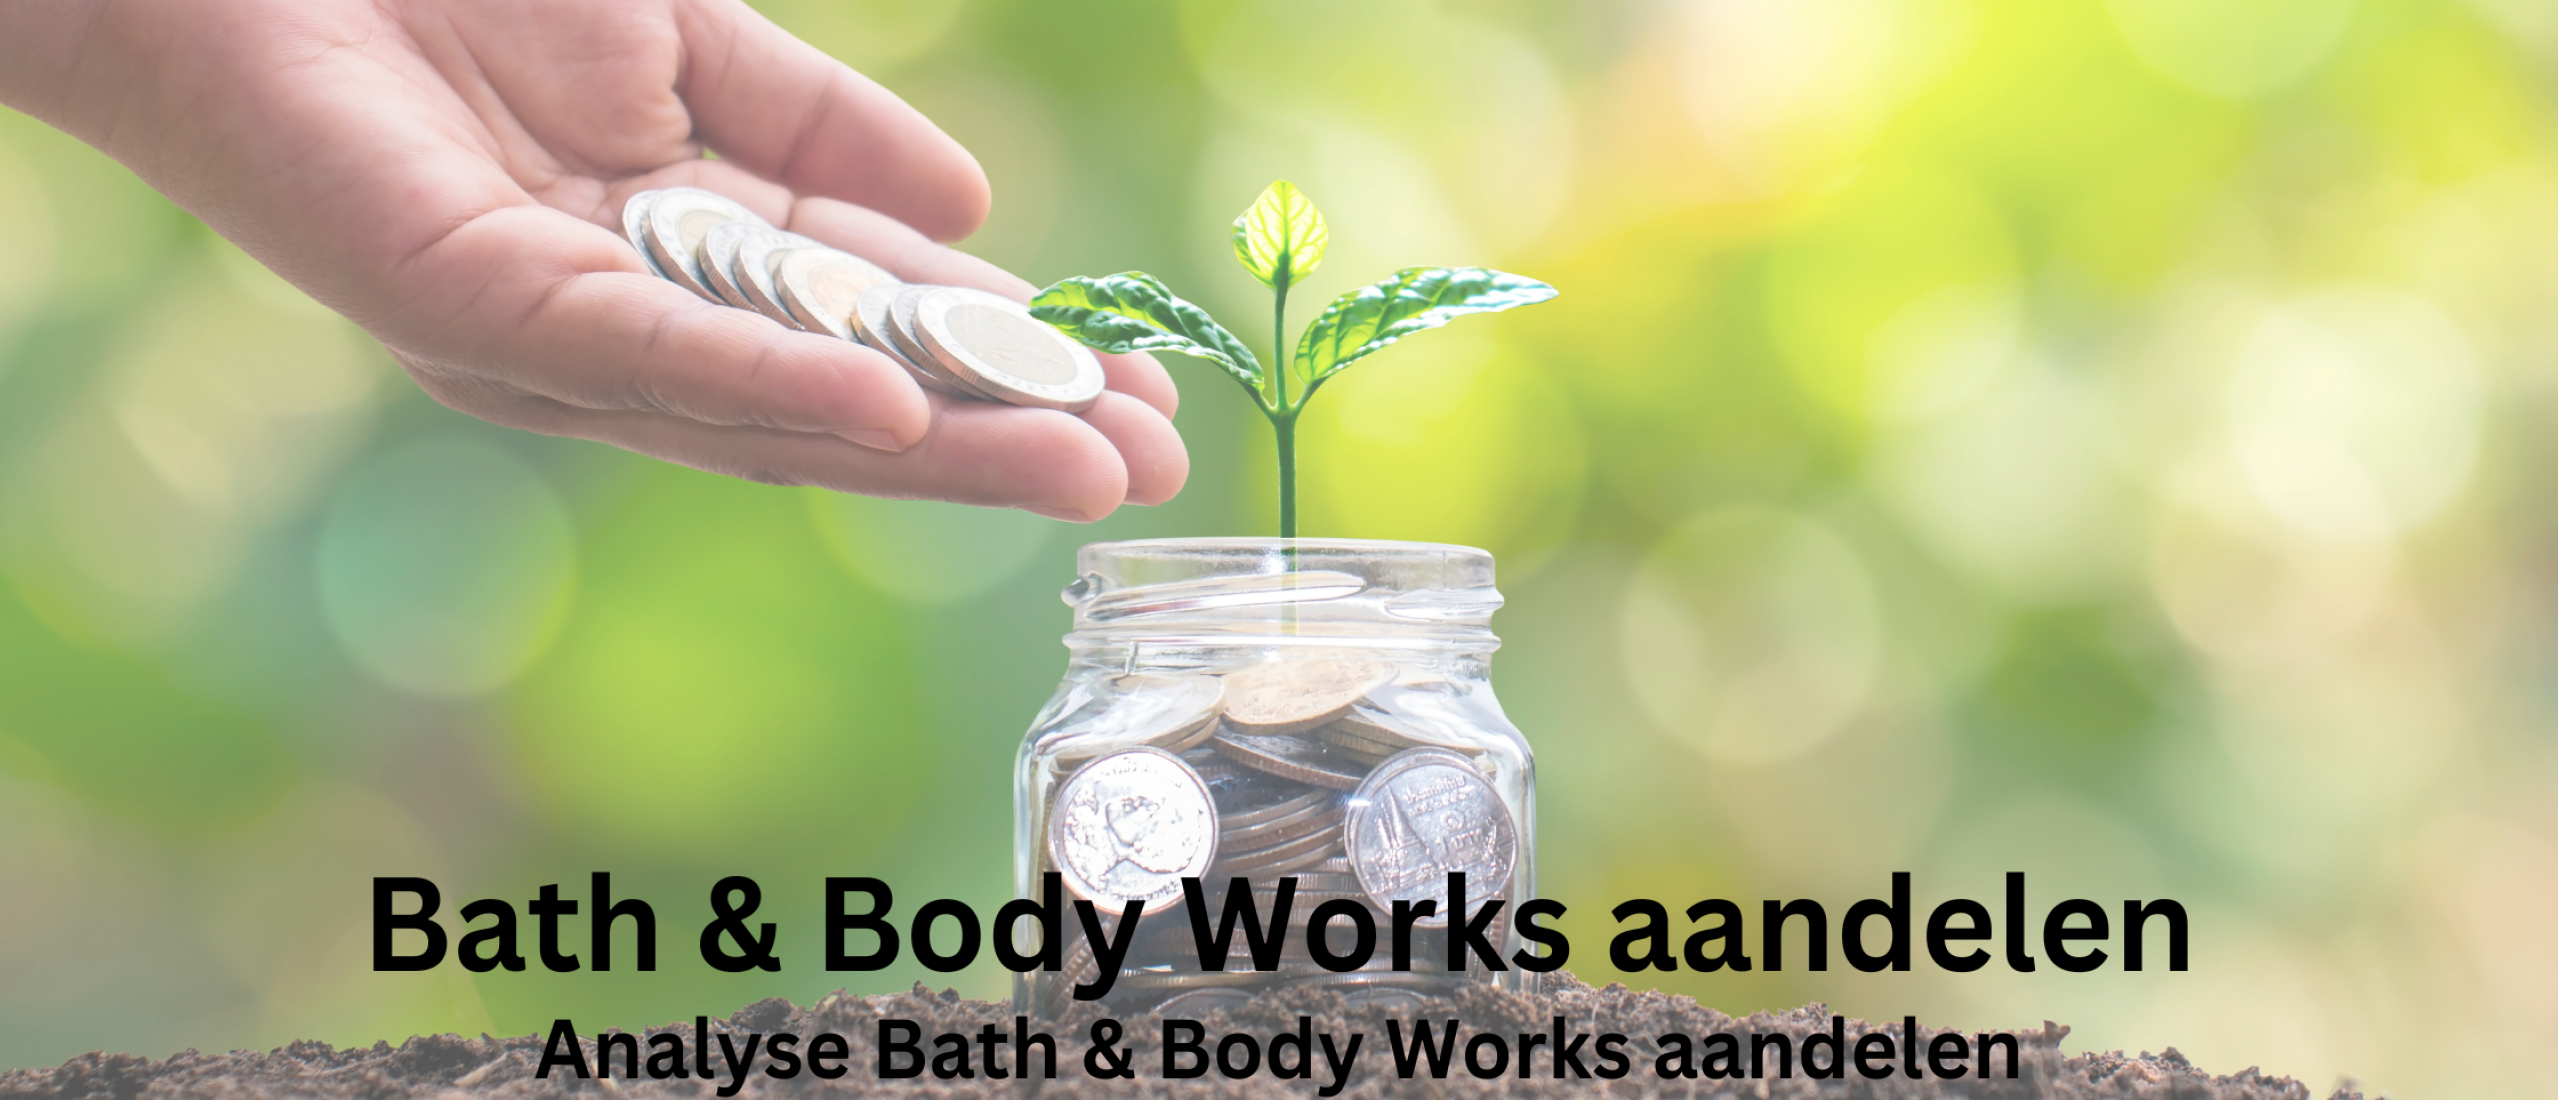 groeiaandelen-bath-body-works-aandelen-kopen